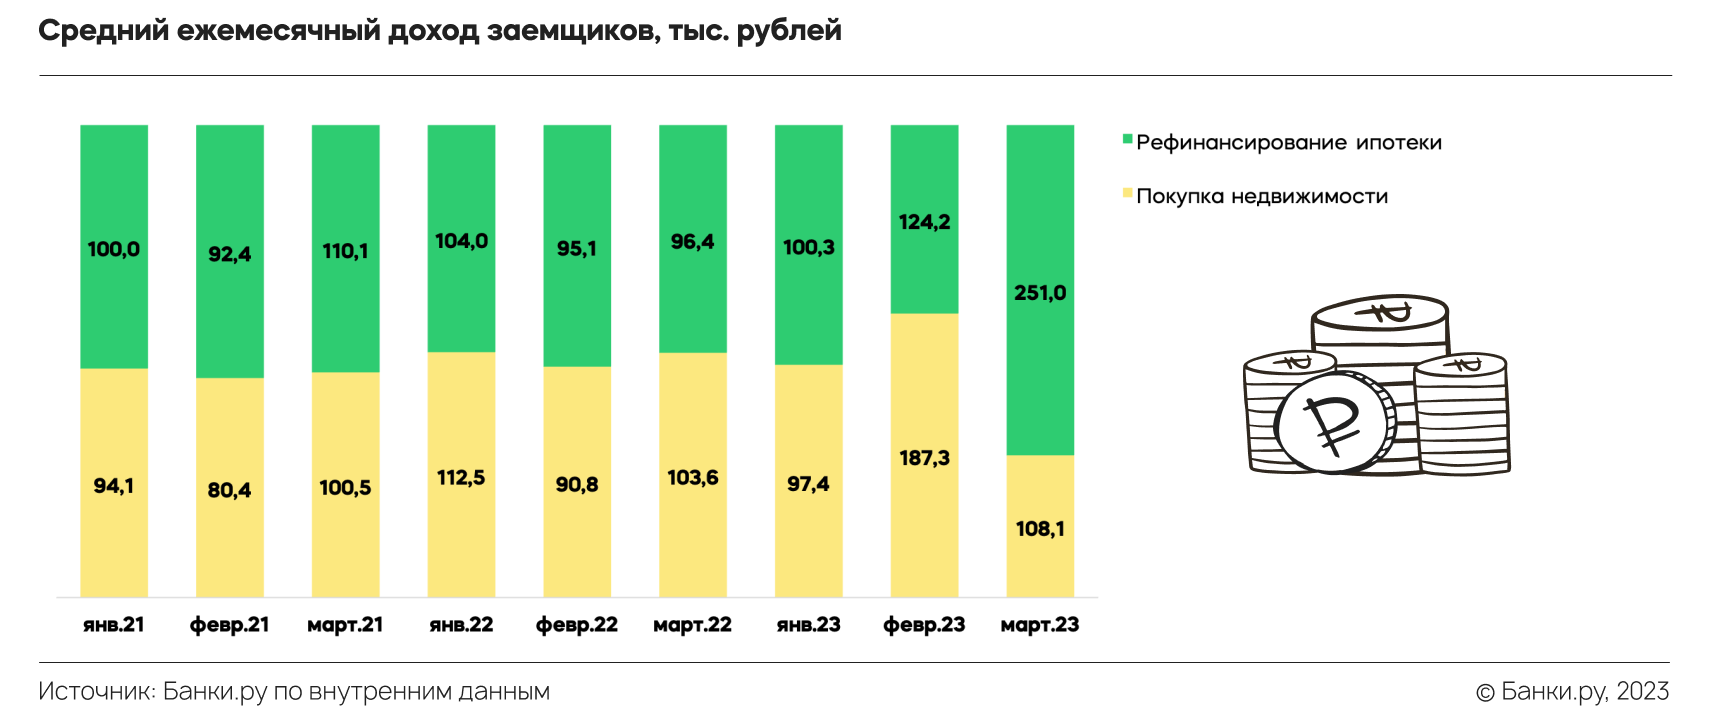 Ипотека 2022 2023. Средняя ставка ипотеки 2022. Средняя ставка ипотеки 2023. Средняя ставка по ипотеке в России по годам. Процентные ставки по ипотеке США.